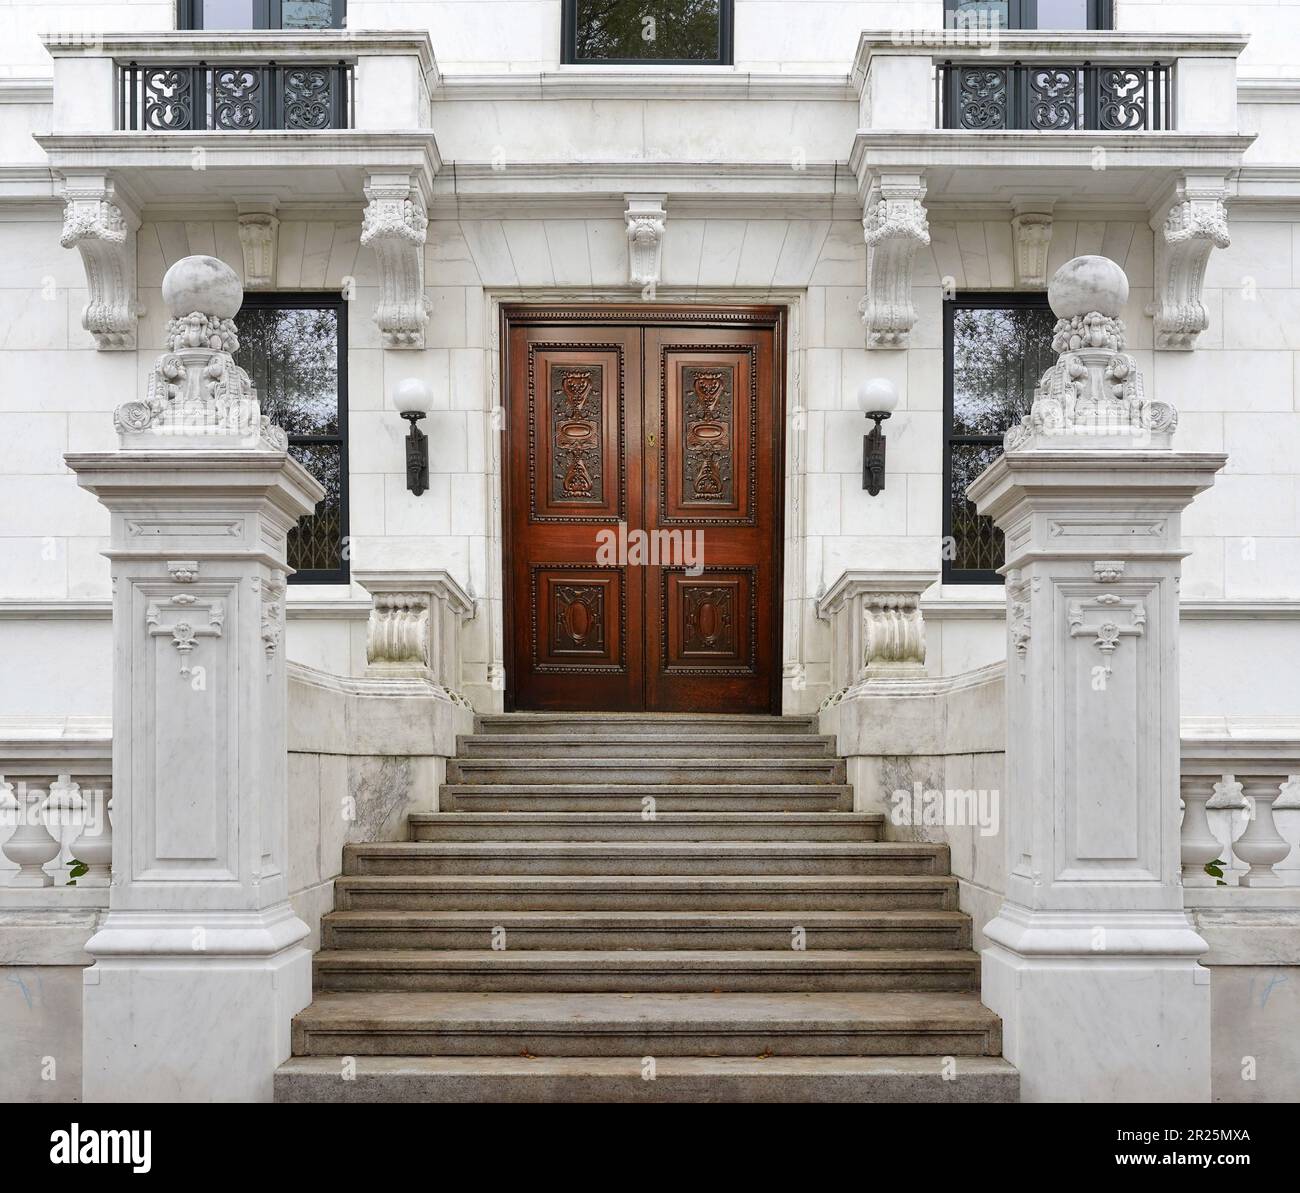 Ingresso dell'edificio degli appartamenti con lunga scalinata ed elegante porta frontale in legno intagliato Foto Stock